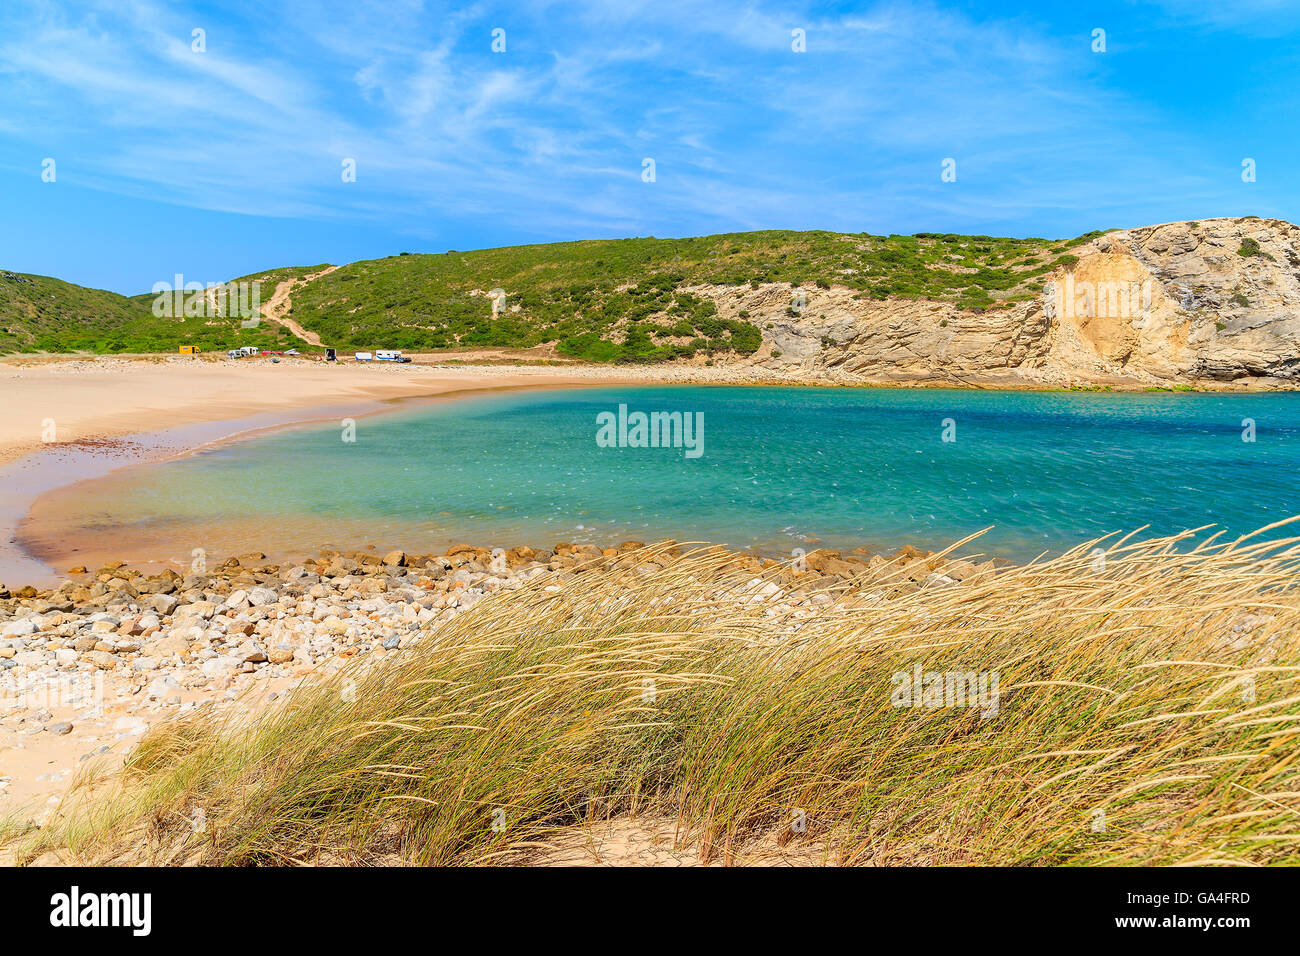 La hierba en el Barranco de arena hermosa playa, Portugal Foto de stock